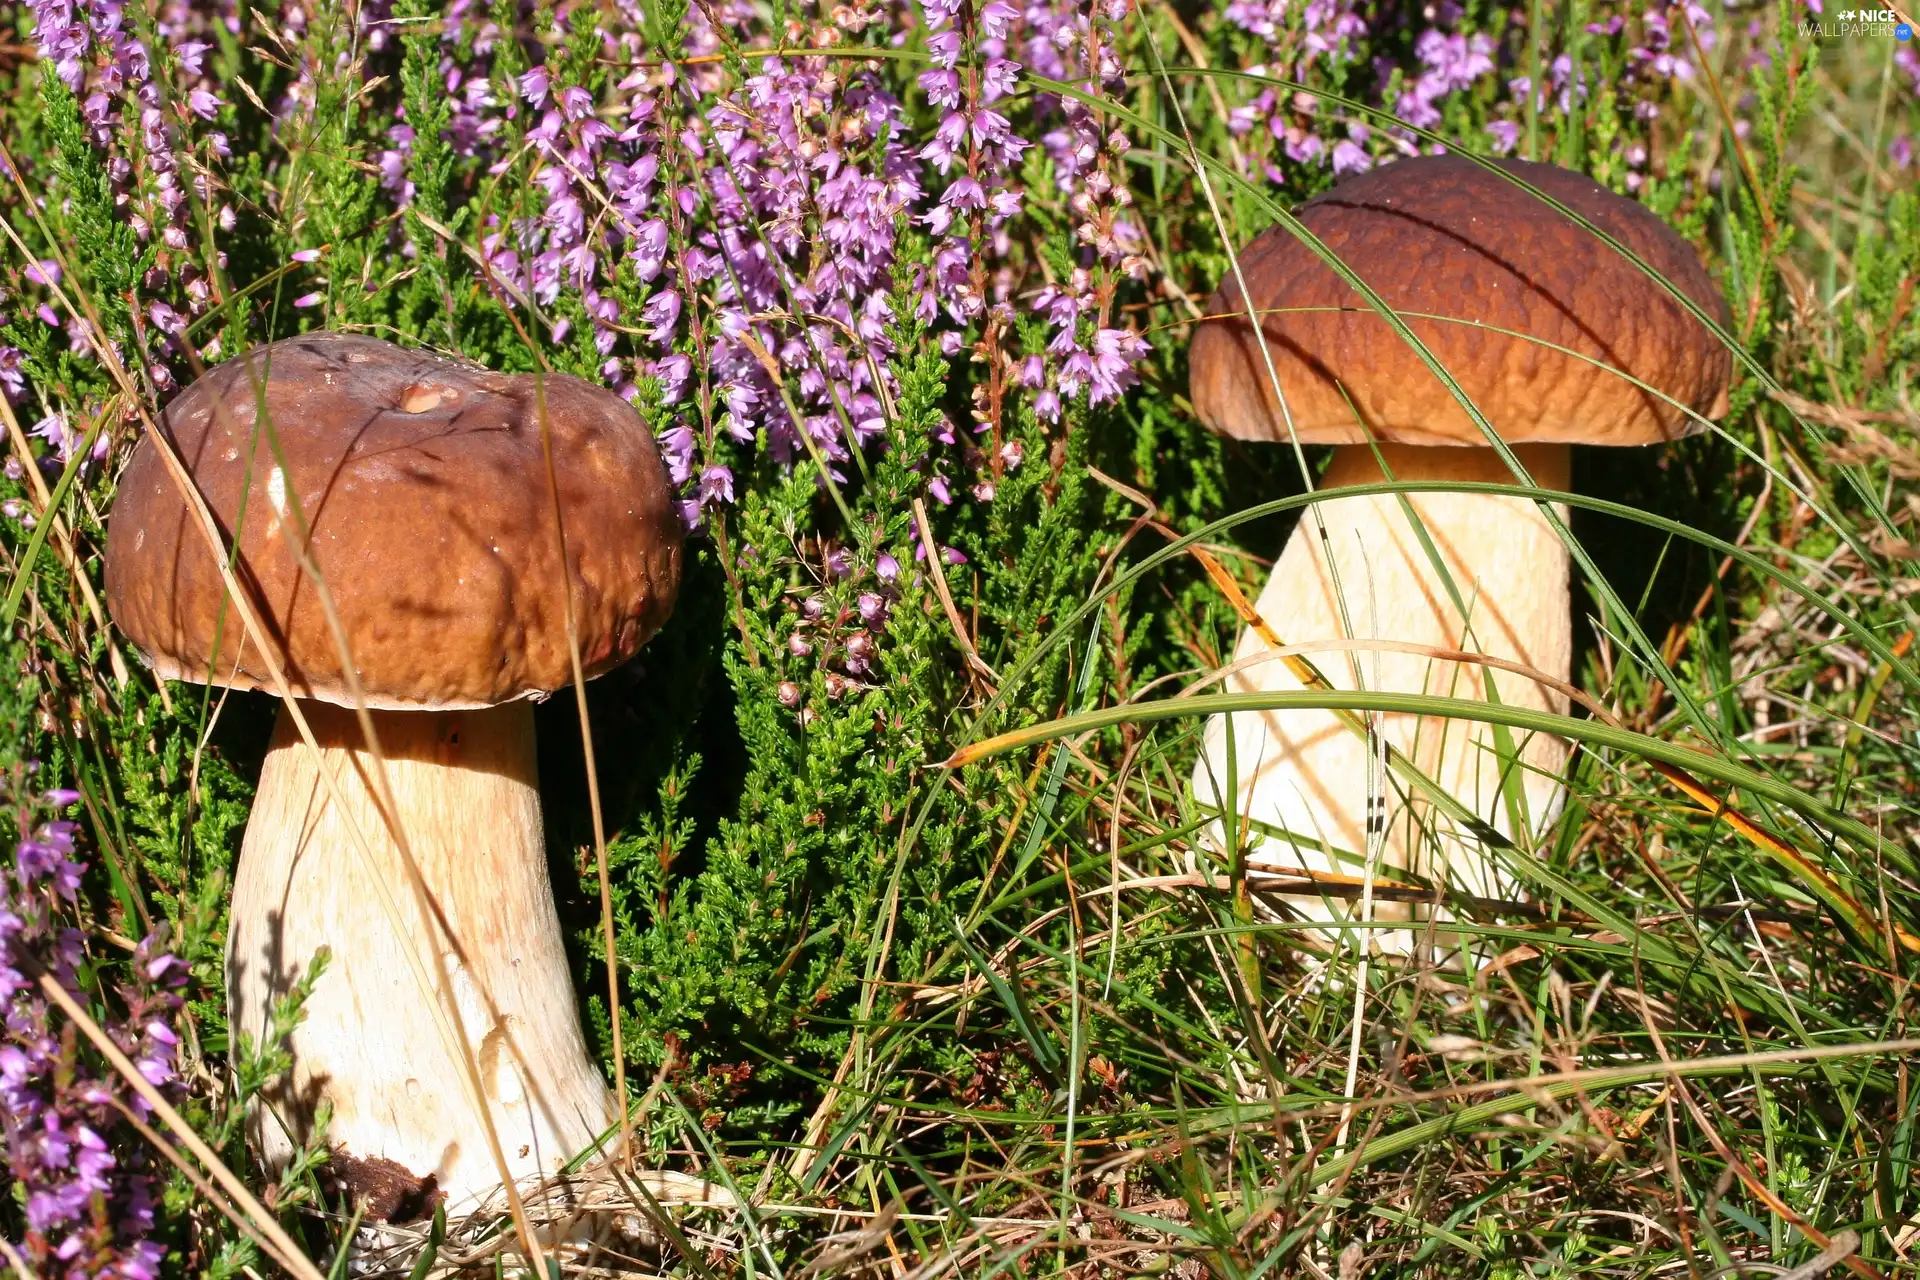 Moss, mushrooms, boletus